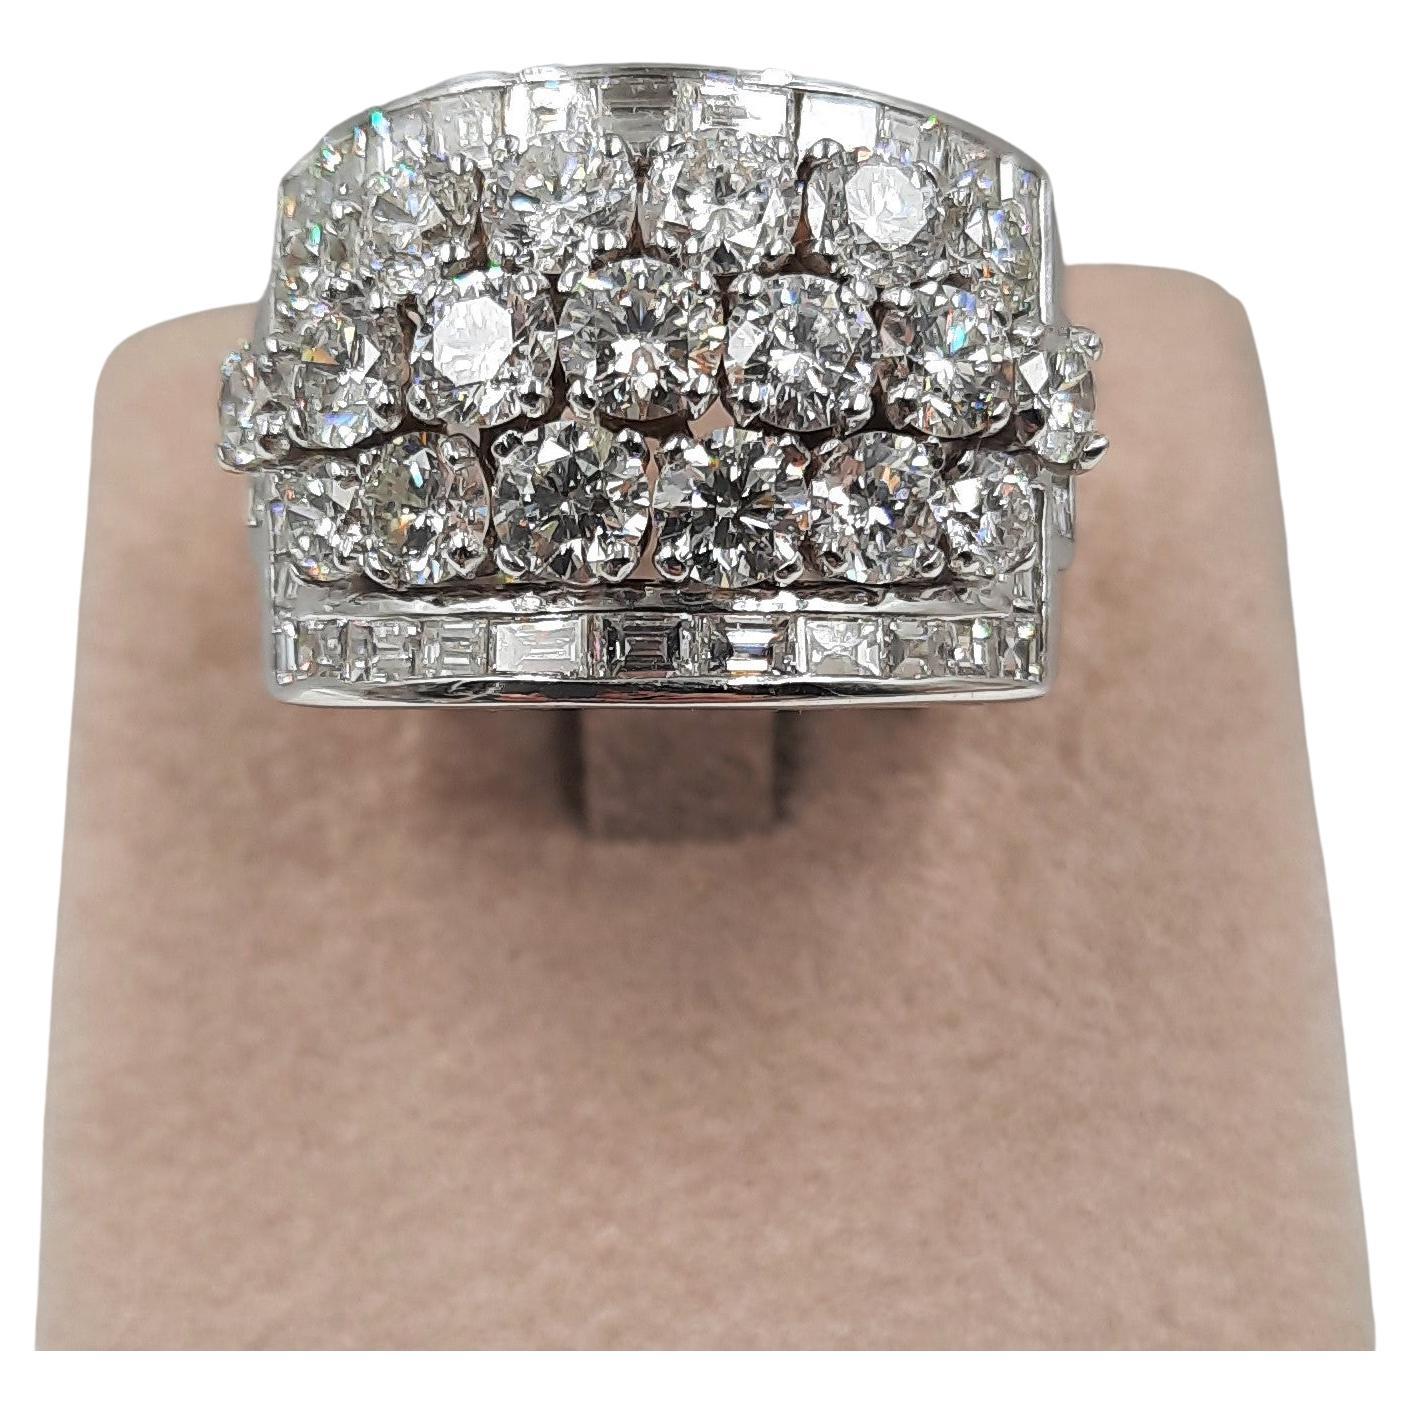 Exceptionnel diamant blanc taille brillant (3,6 carats), diamant blanc baguette (1,31 carats)  et bague à anneau en or blanc 18 carats (17,8 grammes).
Eventuellement en ensemble avec des boucles d'oreilles (voir photo).